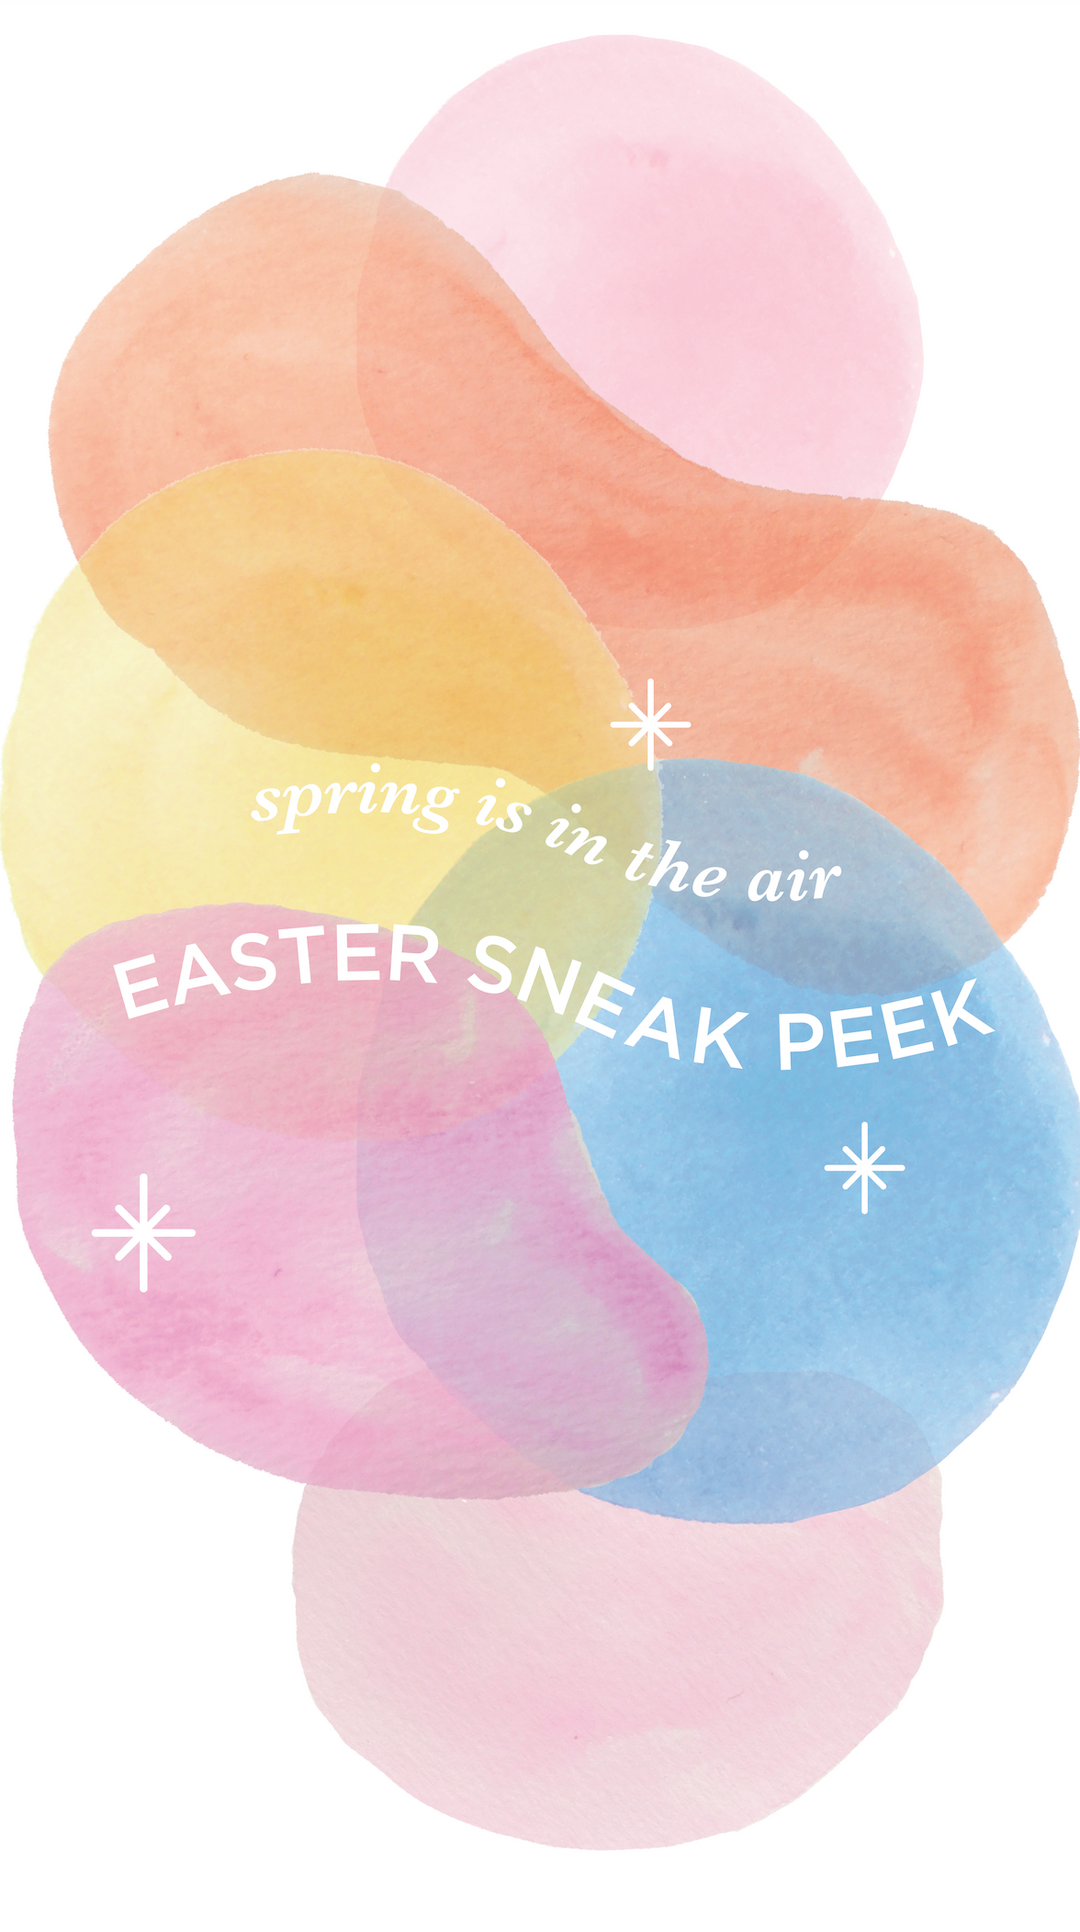 Easter Sneak Peek